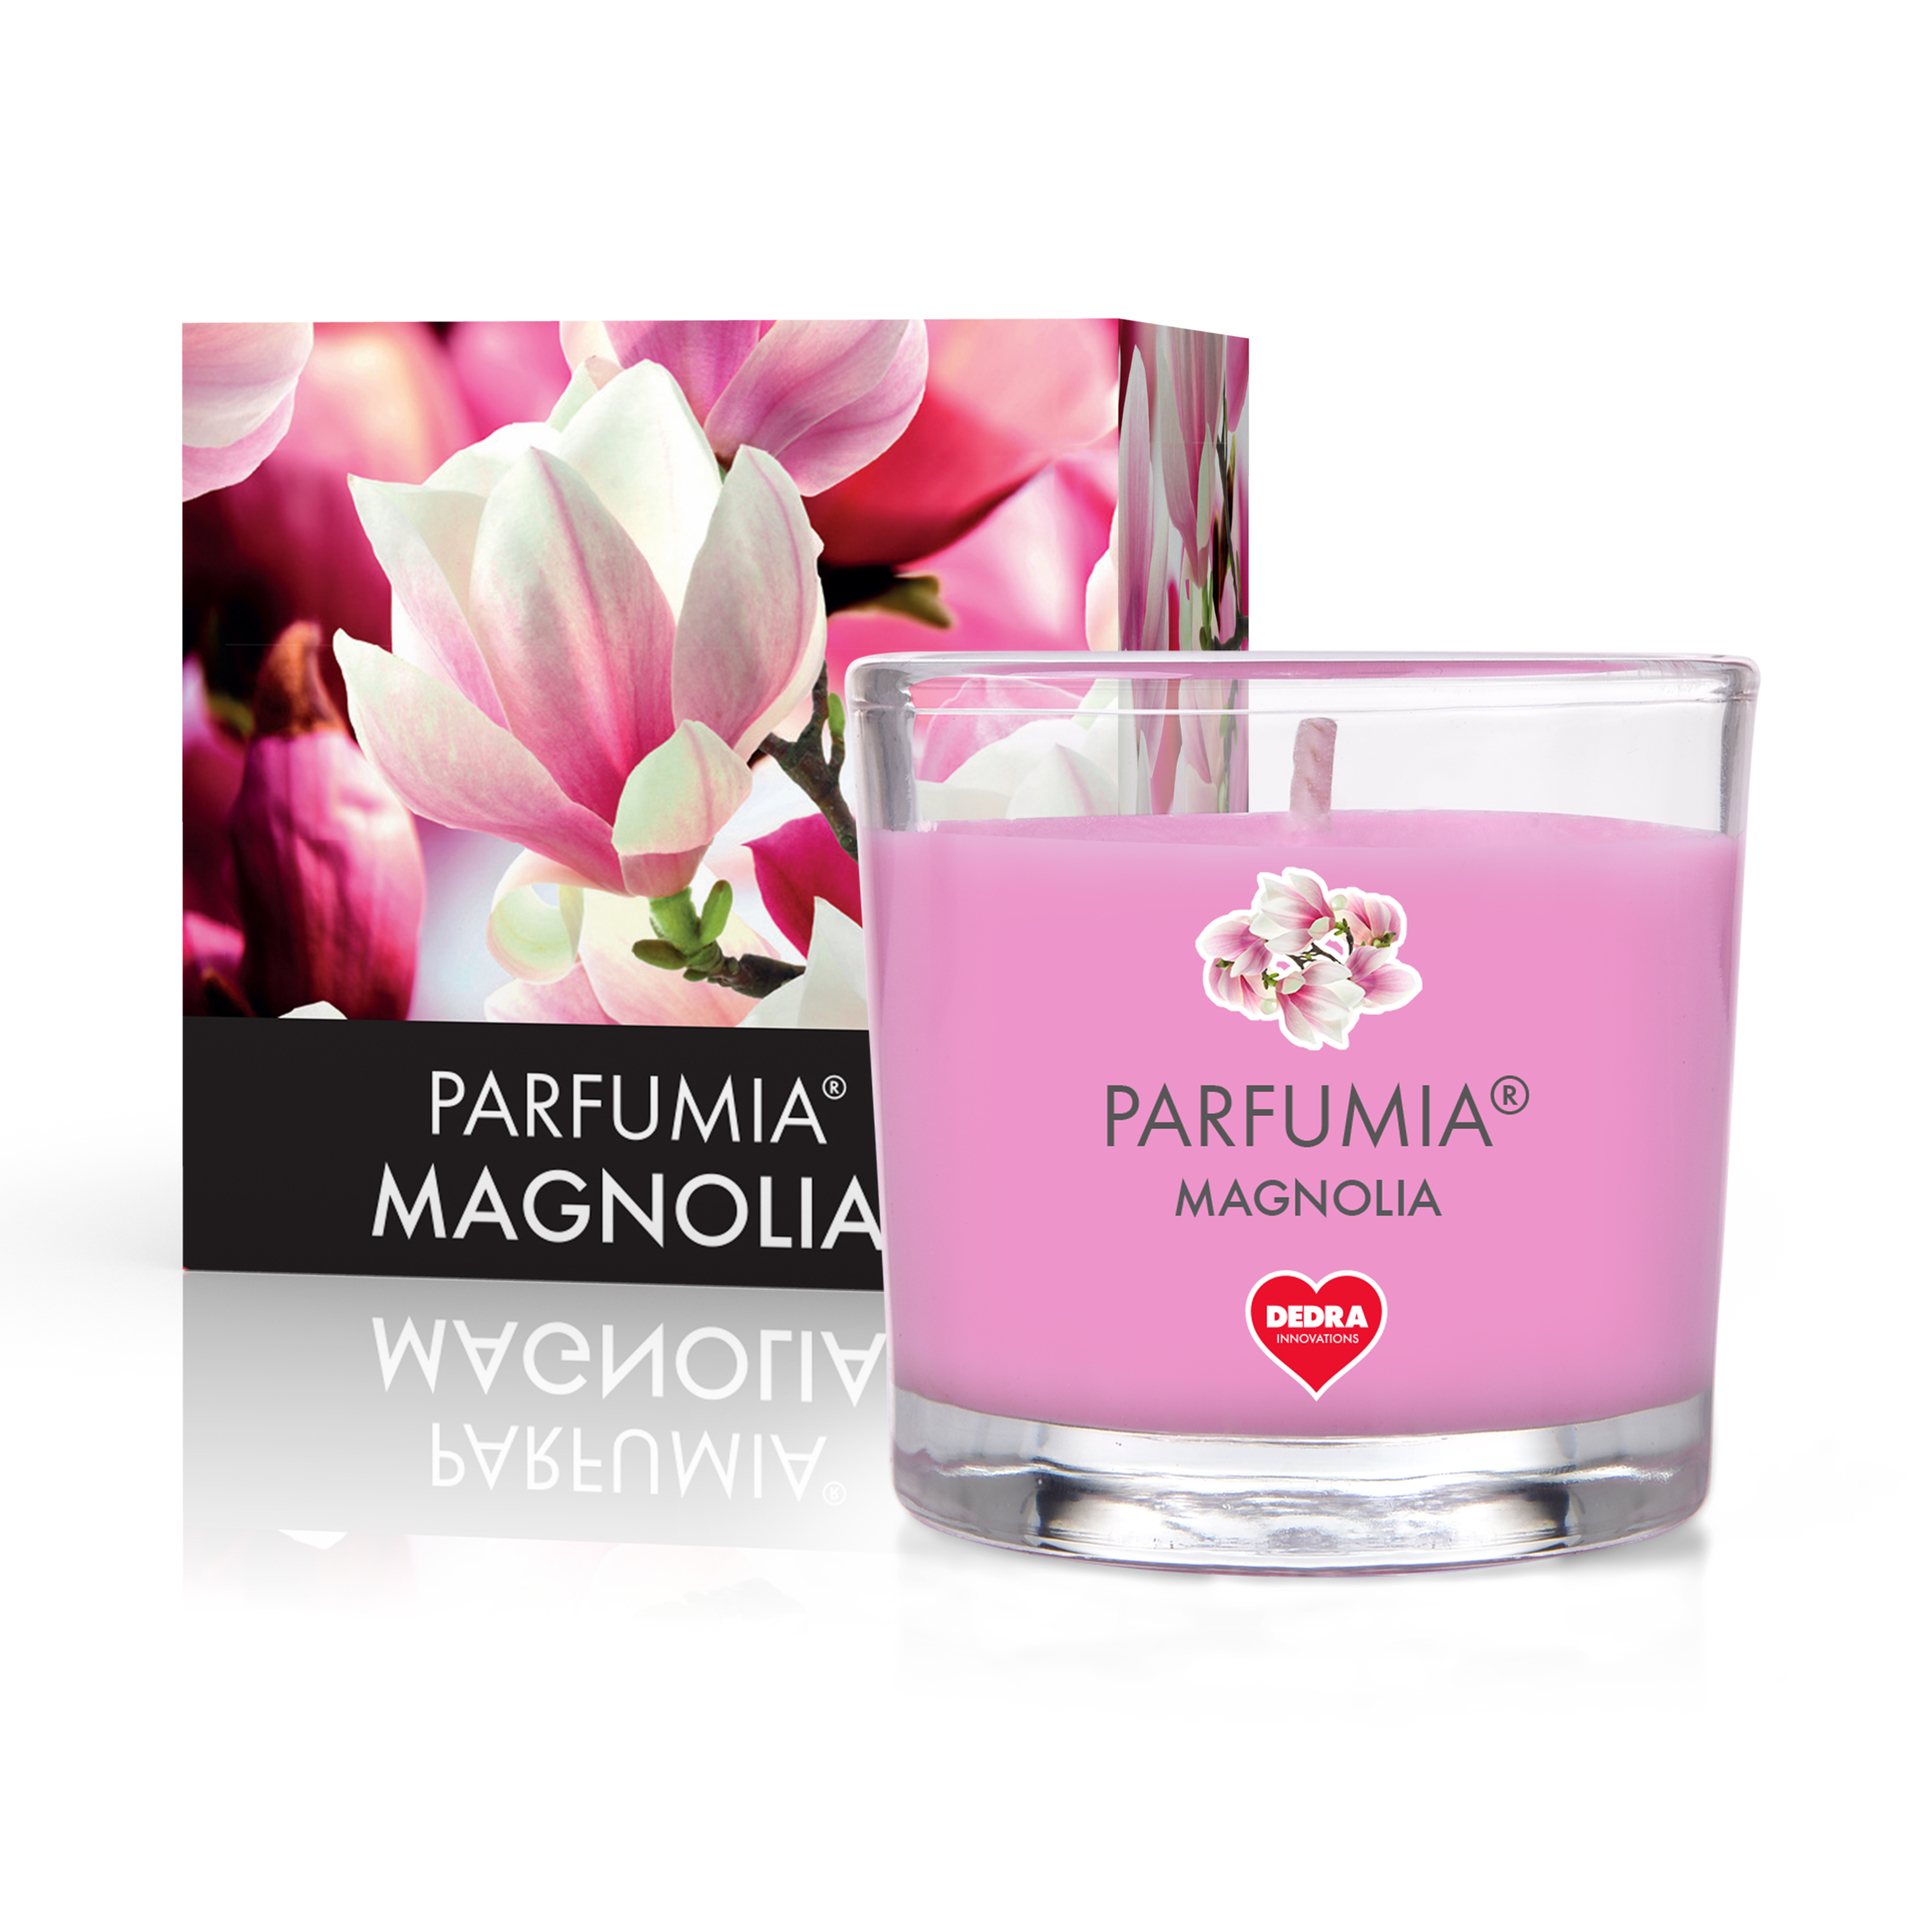 55 ml votivní sójová eko-svíce, Magnolia, Parfumia